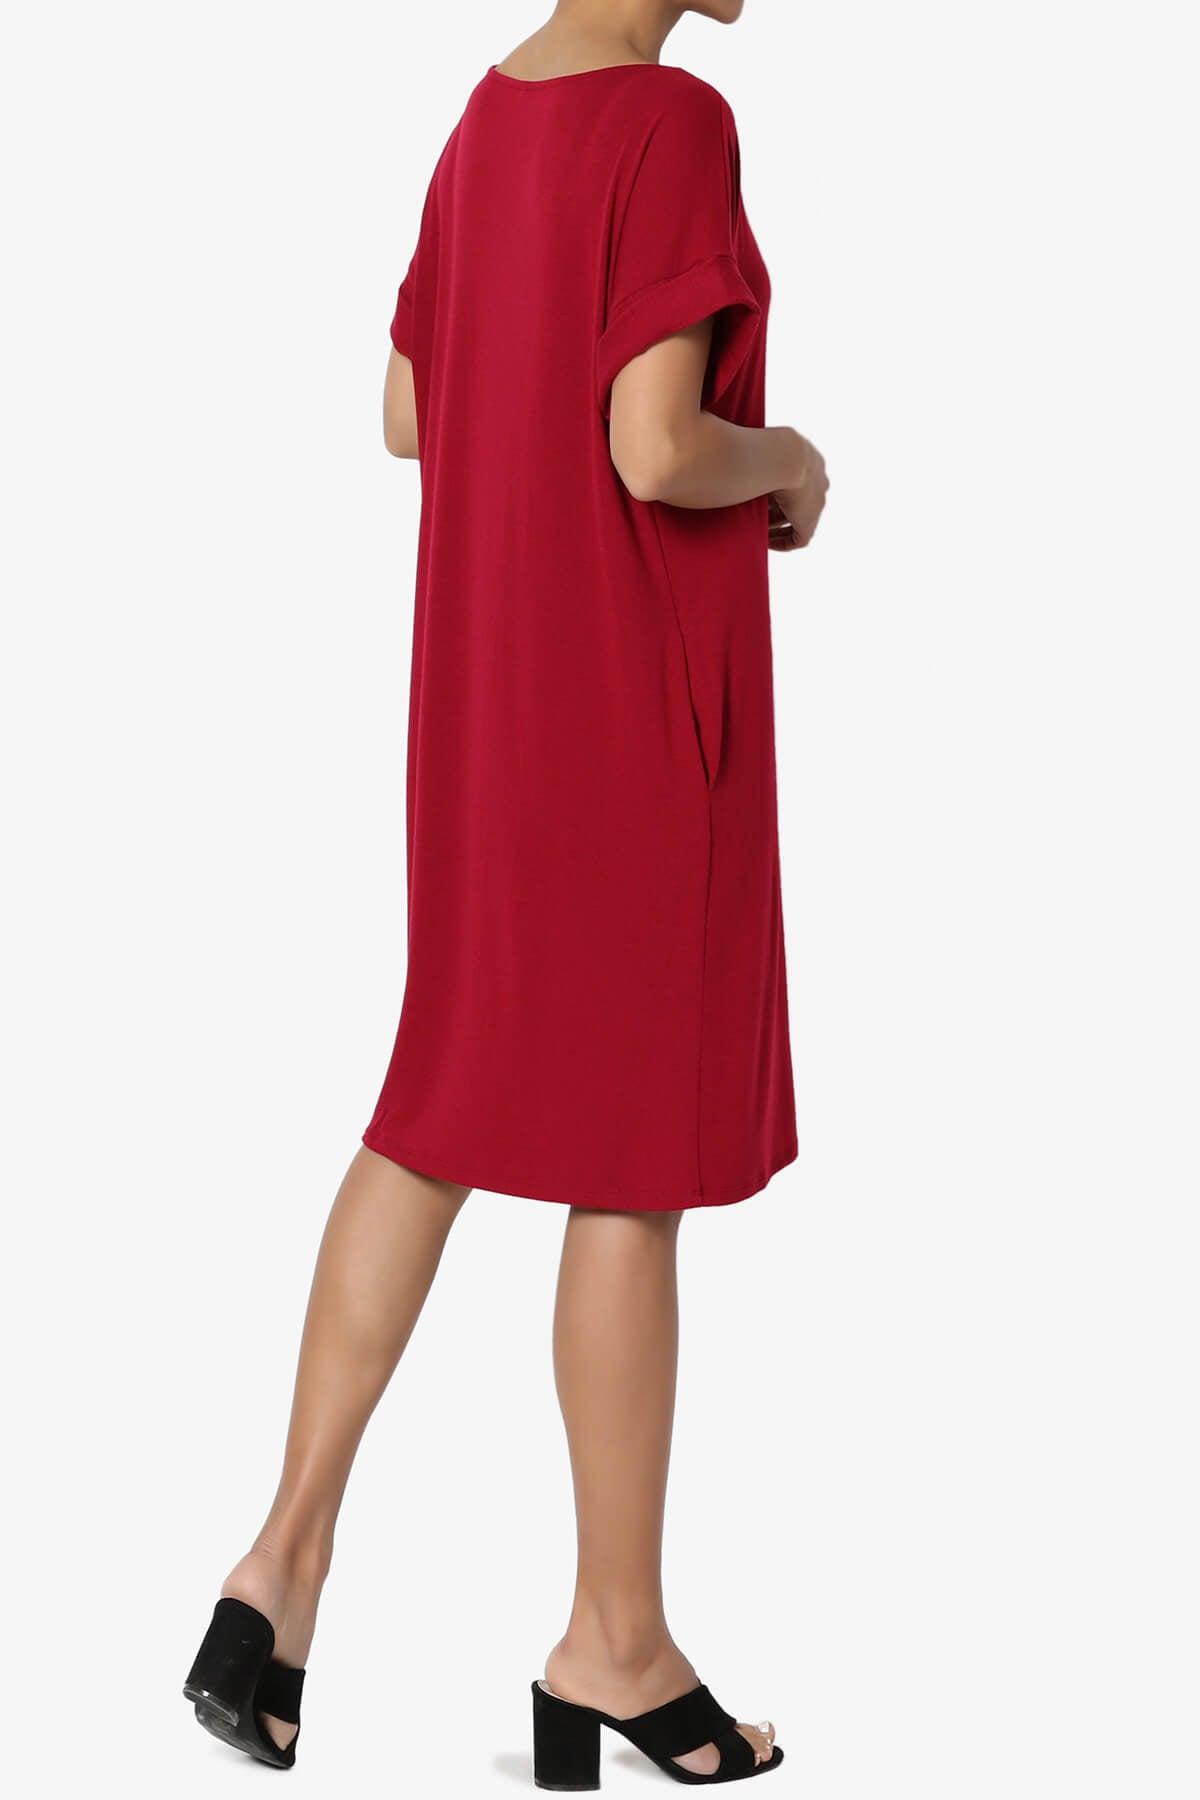 Janie Rolled Short Sleeve Round Neck Dress DARK RED_4